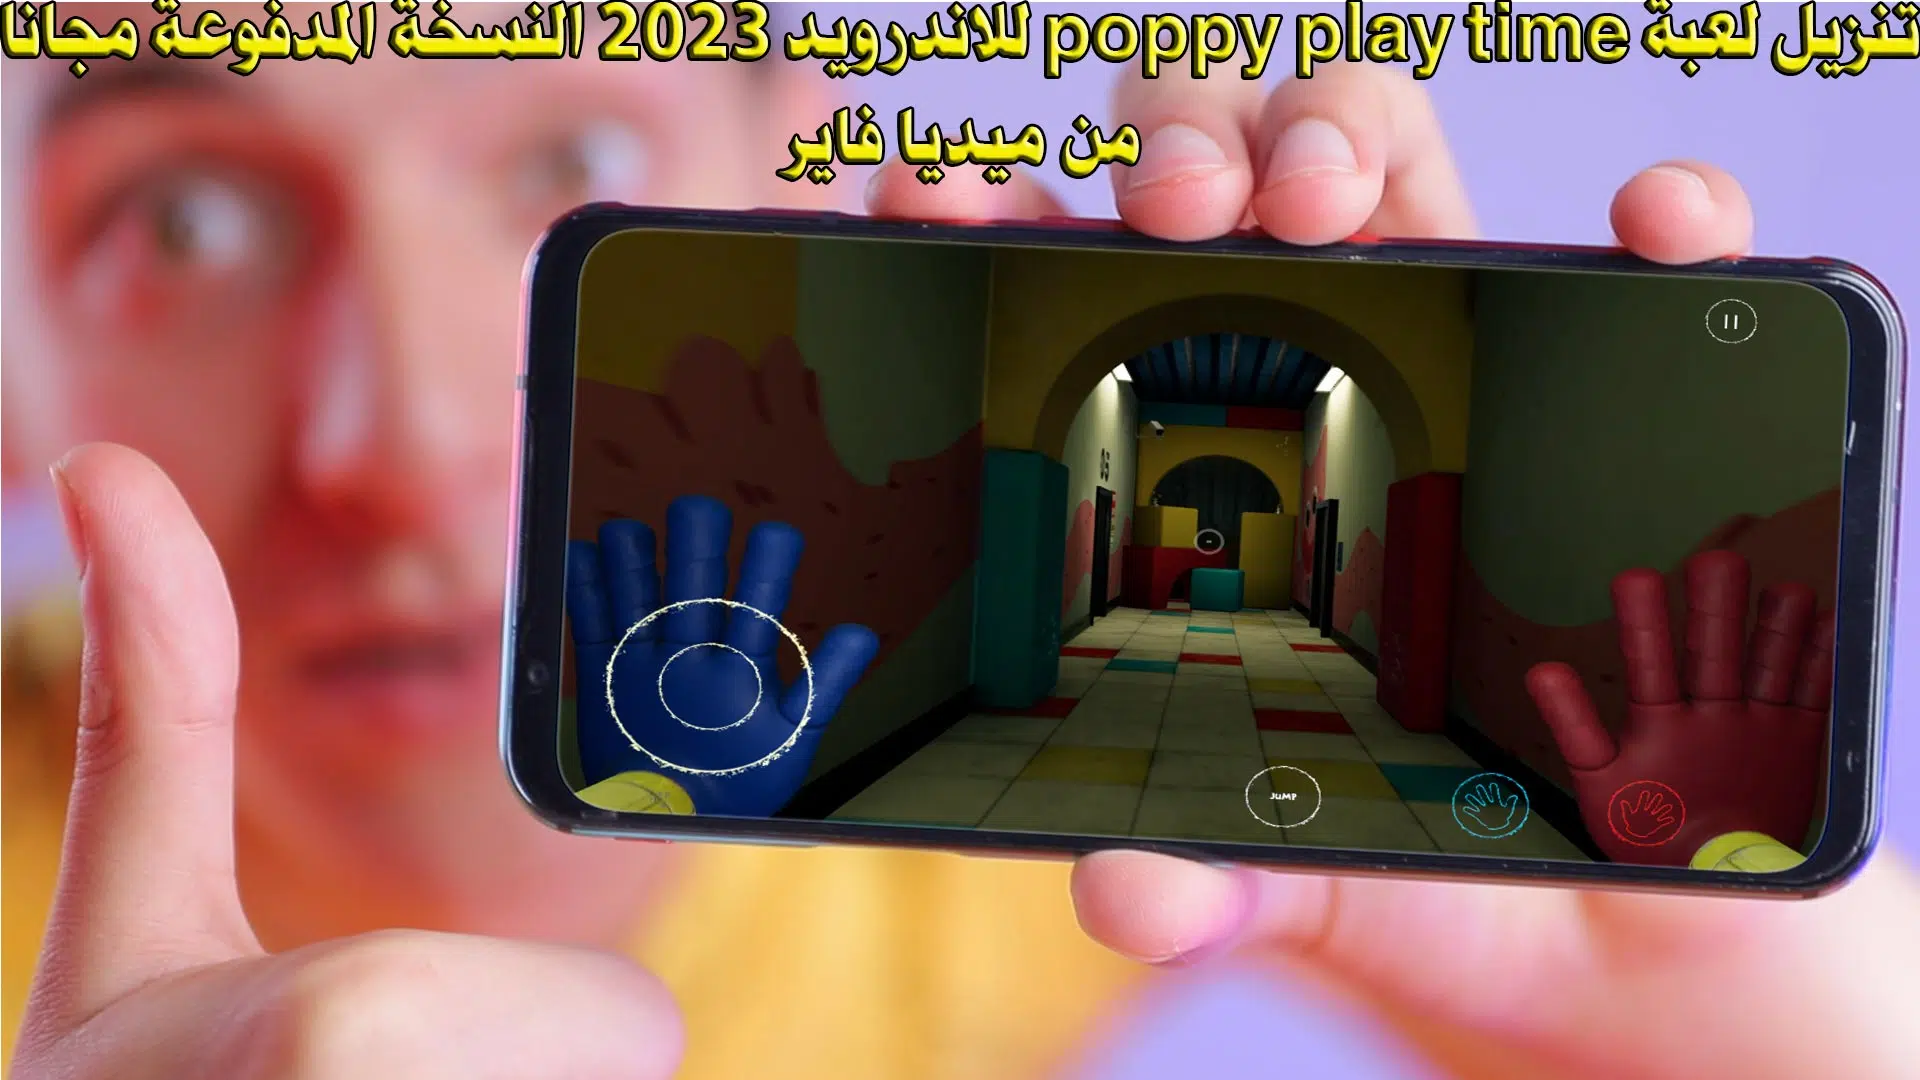 تنزيل لعبة poppy play time للاندرويد 2023 النسخة المدفوعة مجانا من ميديا فاير